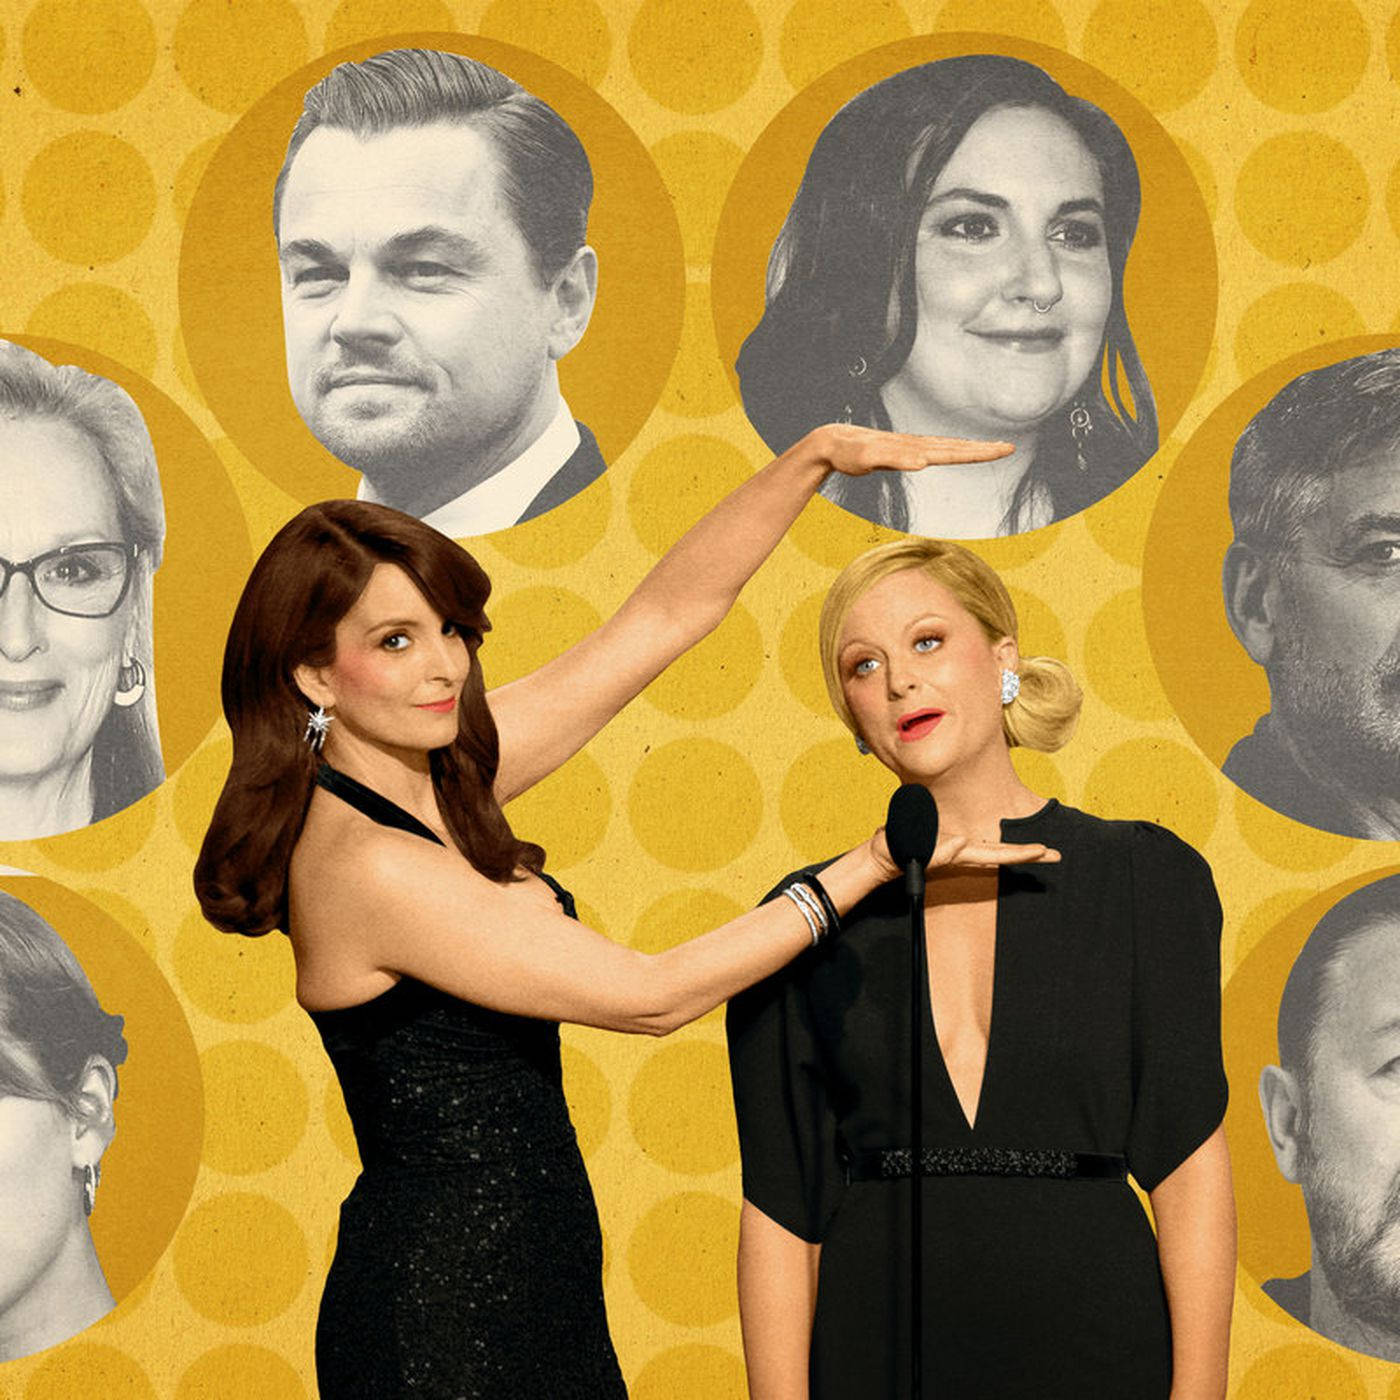 Tinafey Und Amy Poehler, Top-komikerinnen In Hollywood. Wallpaper